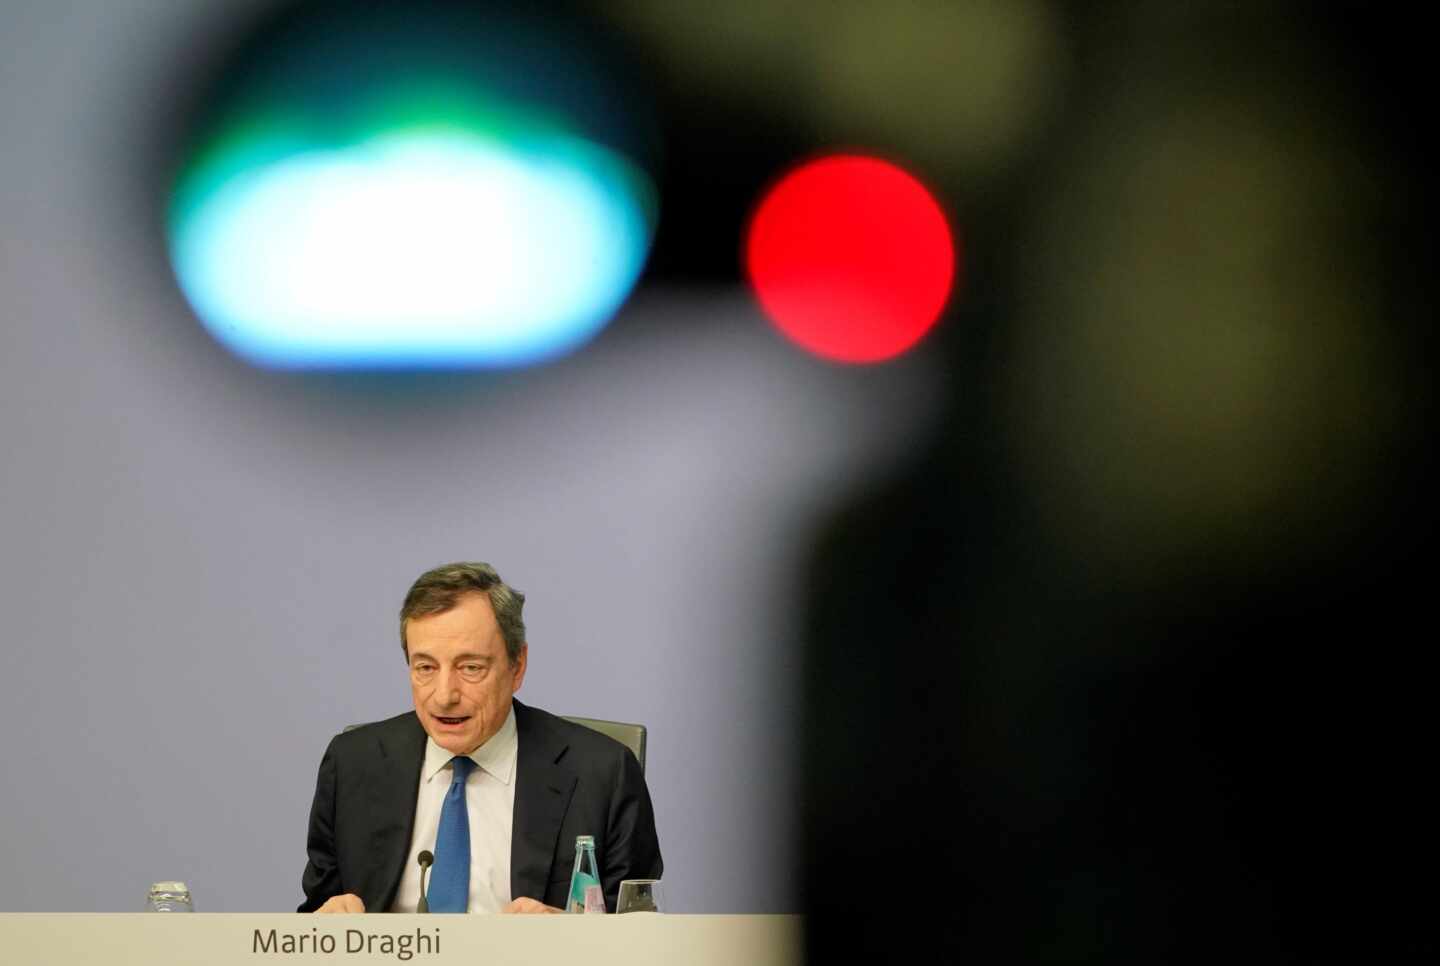 Termina la era Draghi al frente del BCE: "La incertidumbre sigue".